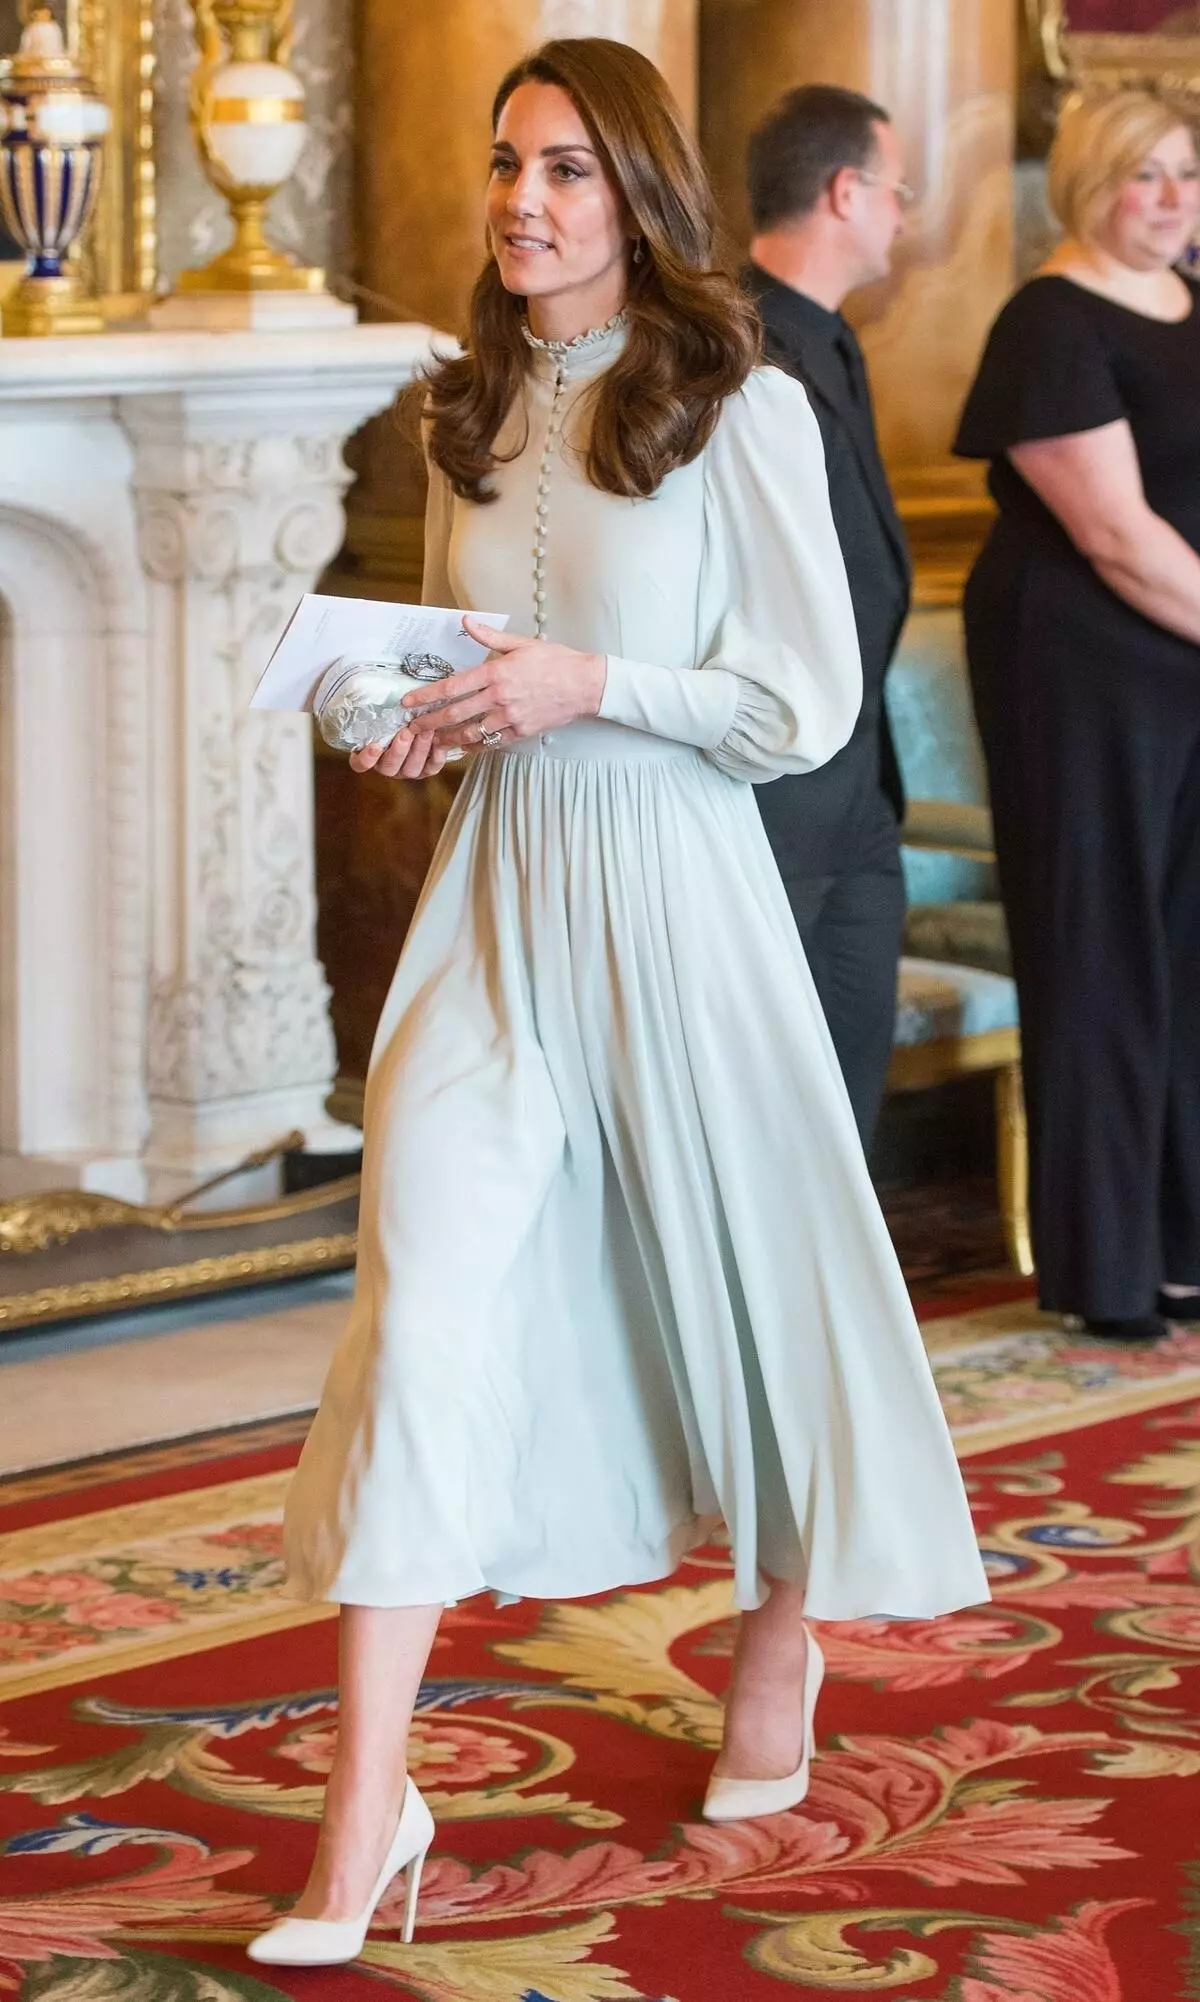 Sambany nandritra ny fotoana ela: zavamaniry Megan sy Kate Middleton miaraka amin'ny fankalazana ho fankalazana ny Prince Charles 143556_1